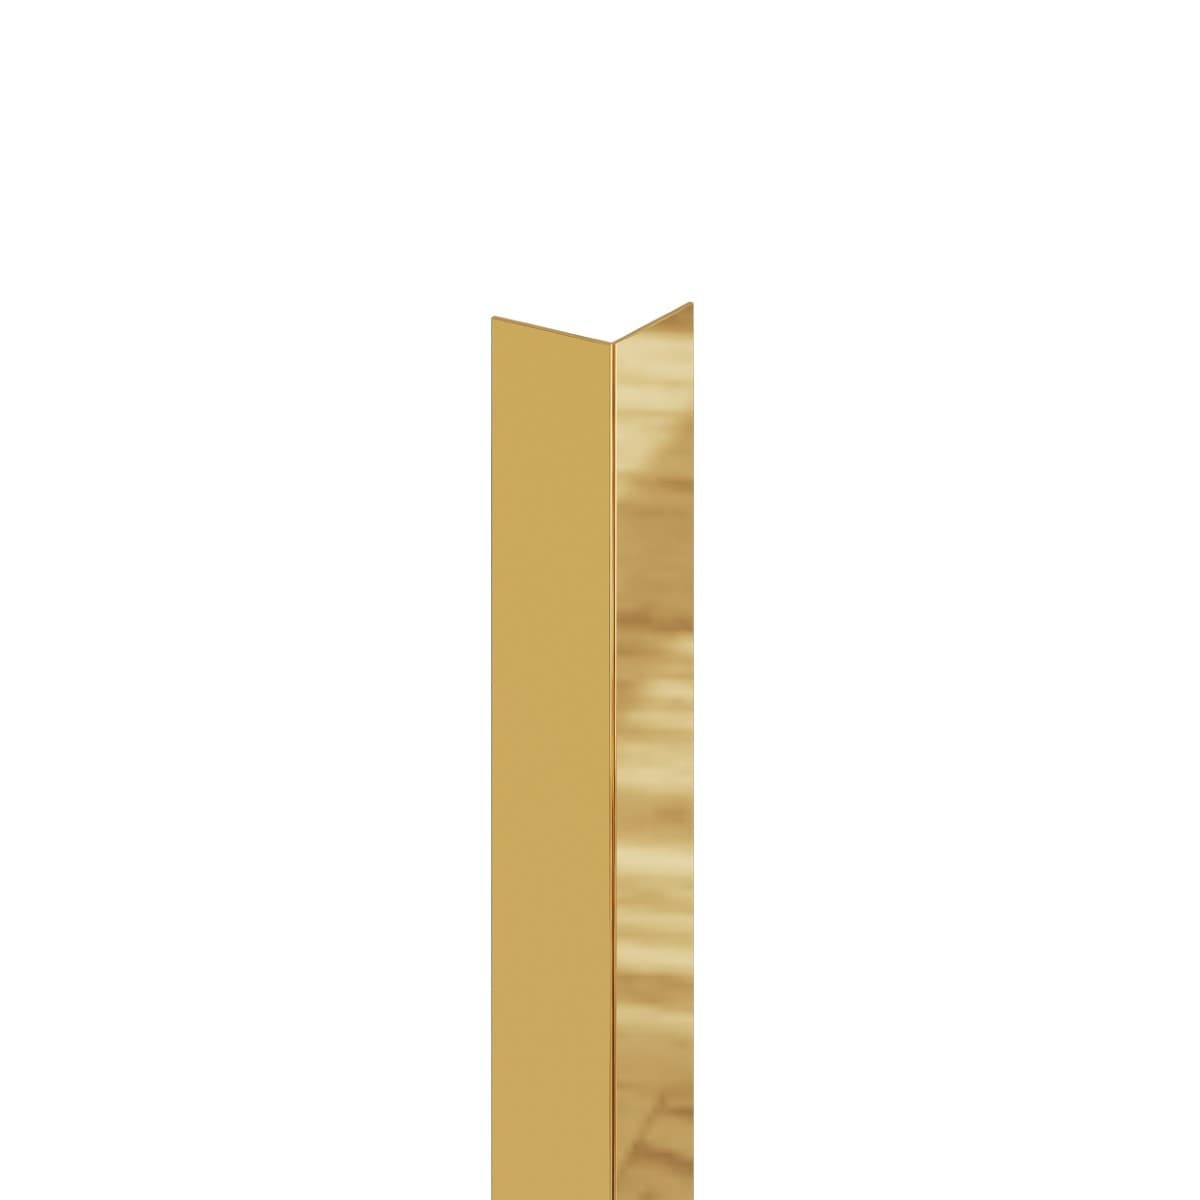 Lišta Eviso rohová zlatá lesklá 270 cm nerez KAGM0002 Eviso